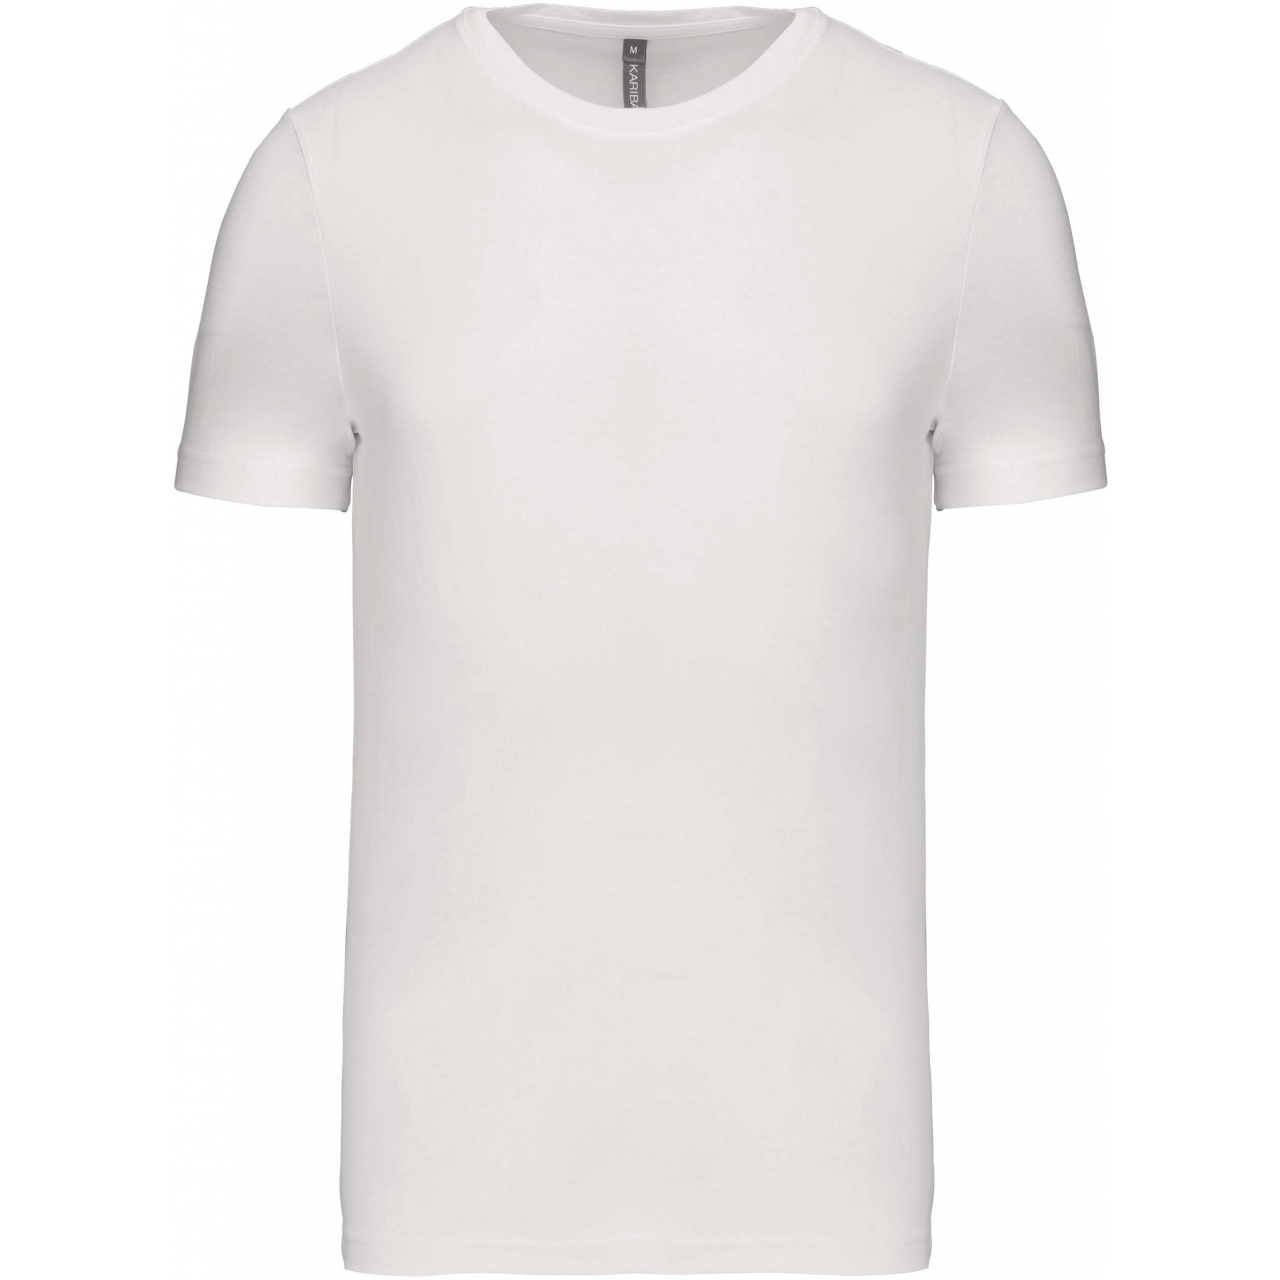 Pánské tričko Kariban krátký rukáv - bílé, XL